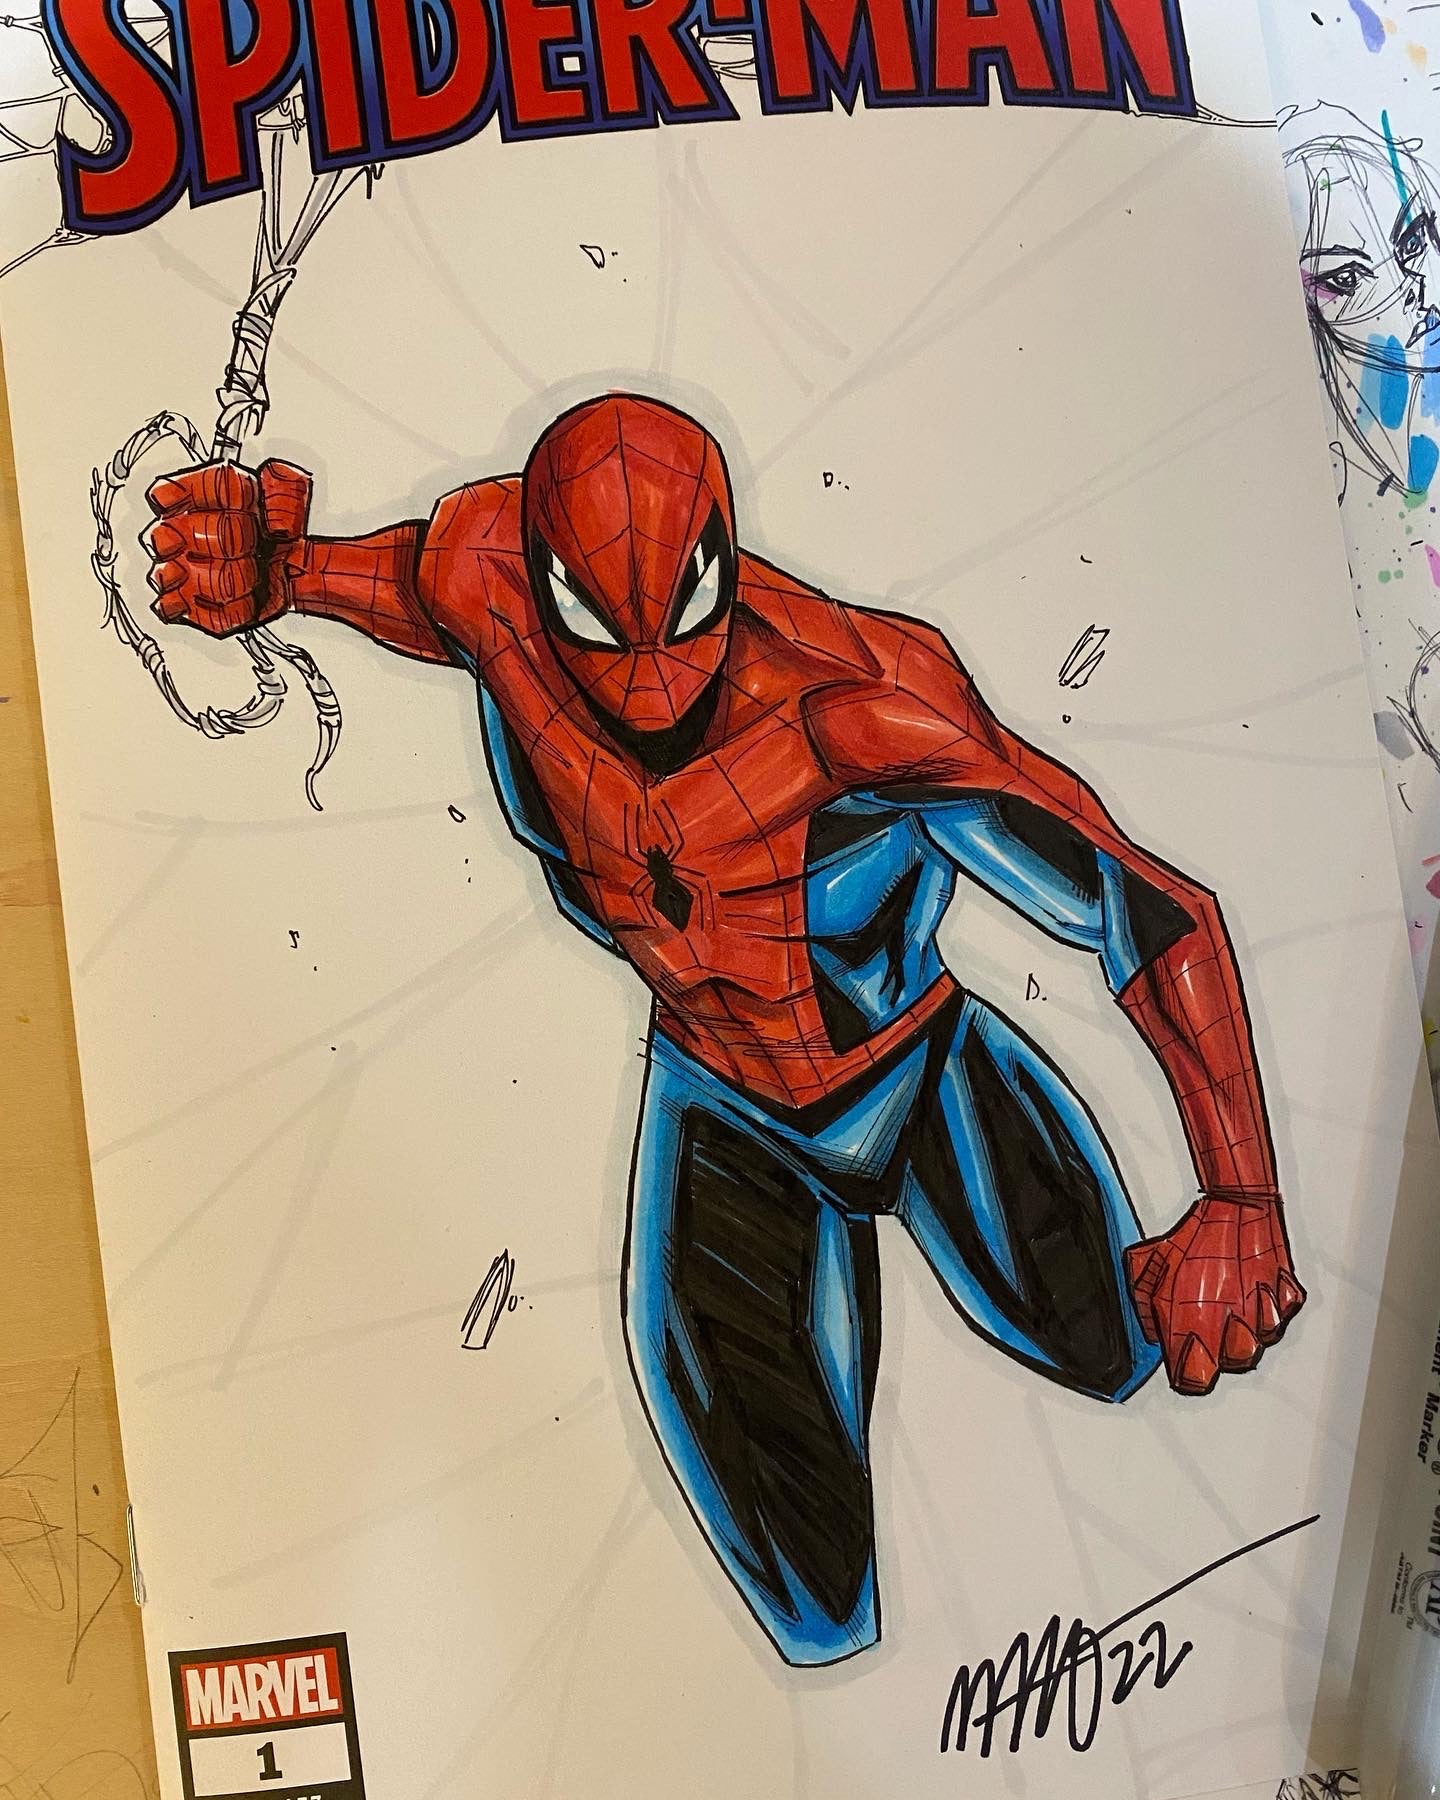 Spider-Man #1 Sketch Cover | ArtofMalo